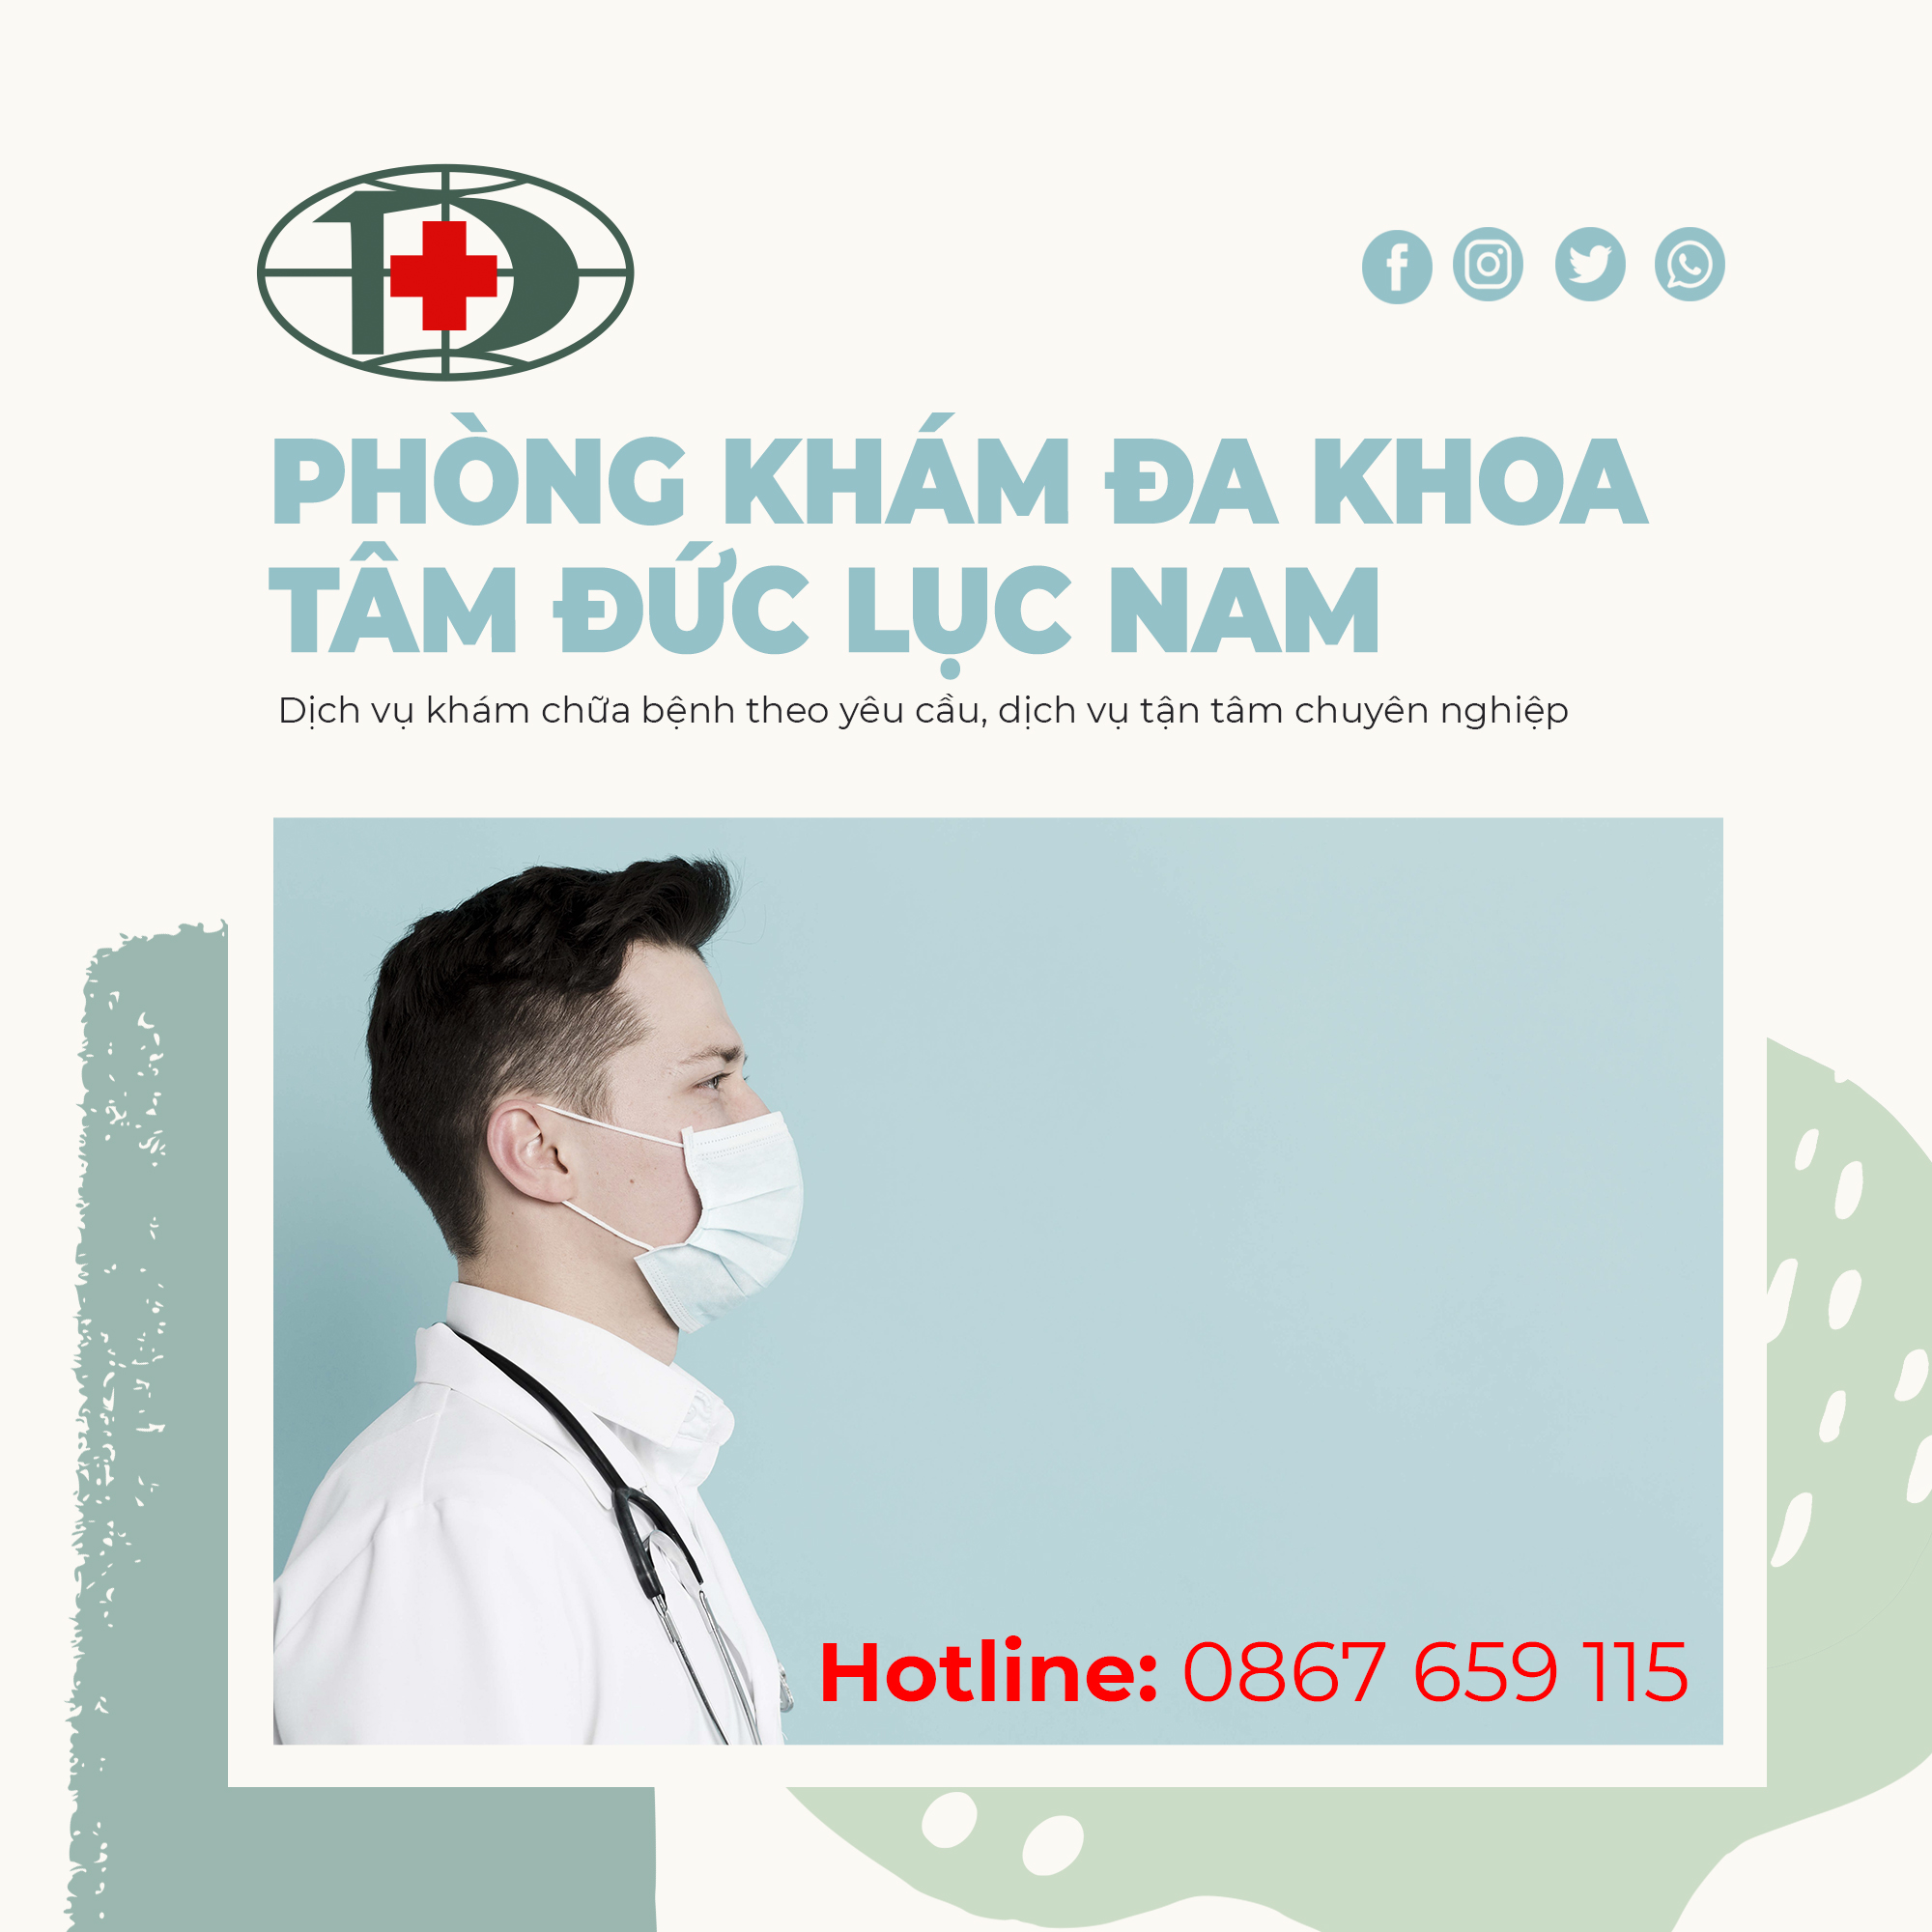 Lý do bạn nên lựa chọn khám phụ khoa ở Lục Nam Bắc Giang - Phòng khám Đa Khoa Tâm Đức là địa chỉ khám phụ khoa uy tín 